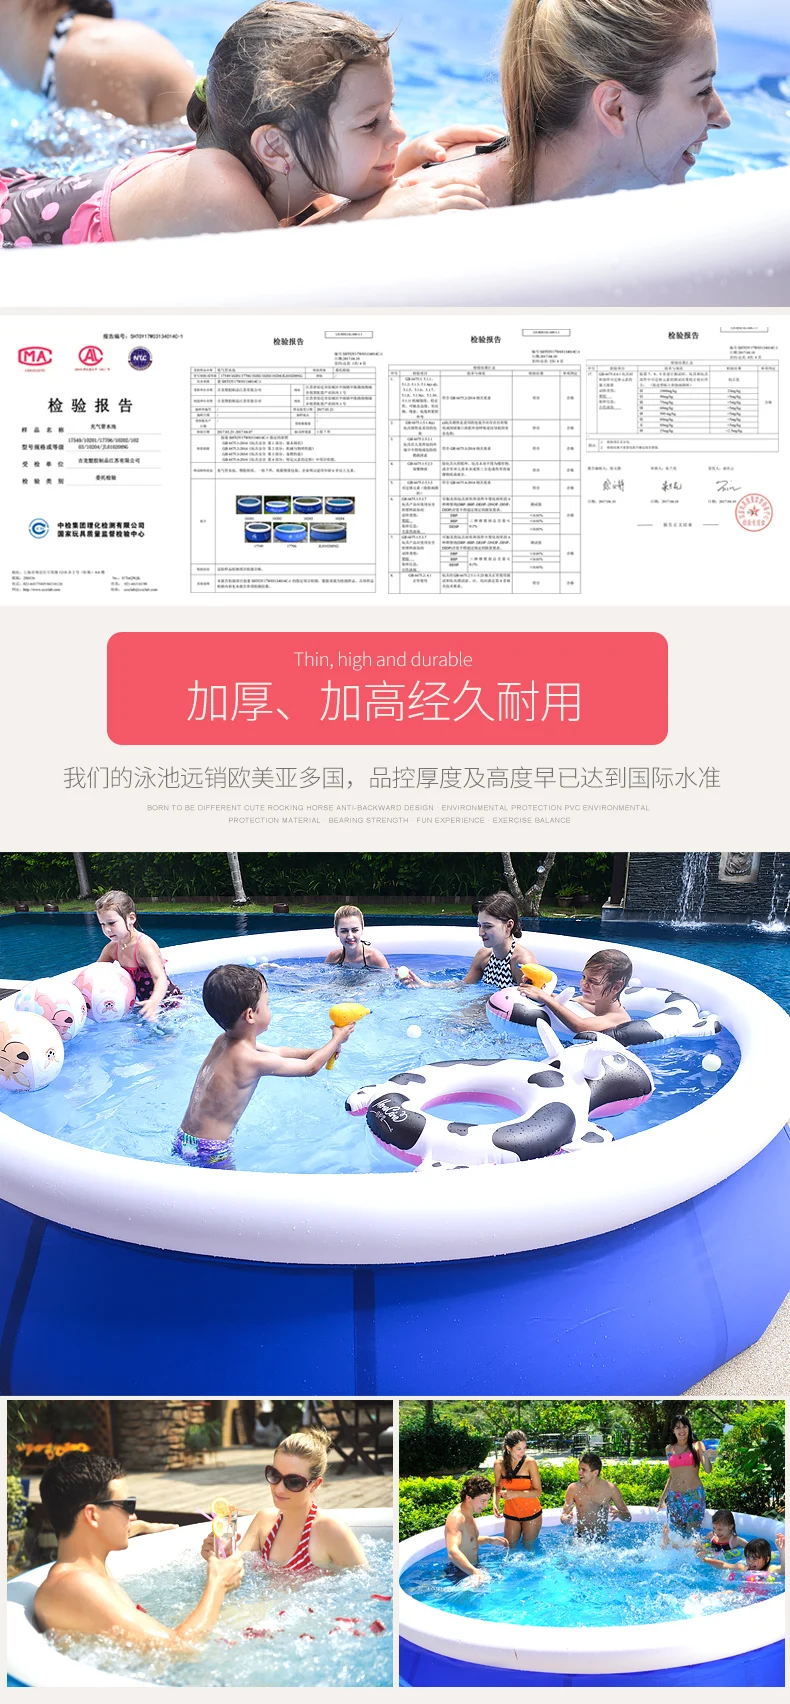 Большой семейный бассейн для детей, взрослых и детей, надувной бассейн с увеличенной плотностью